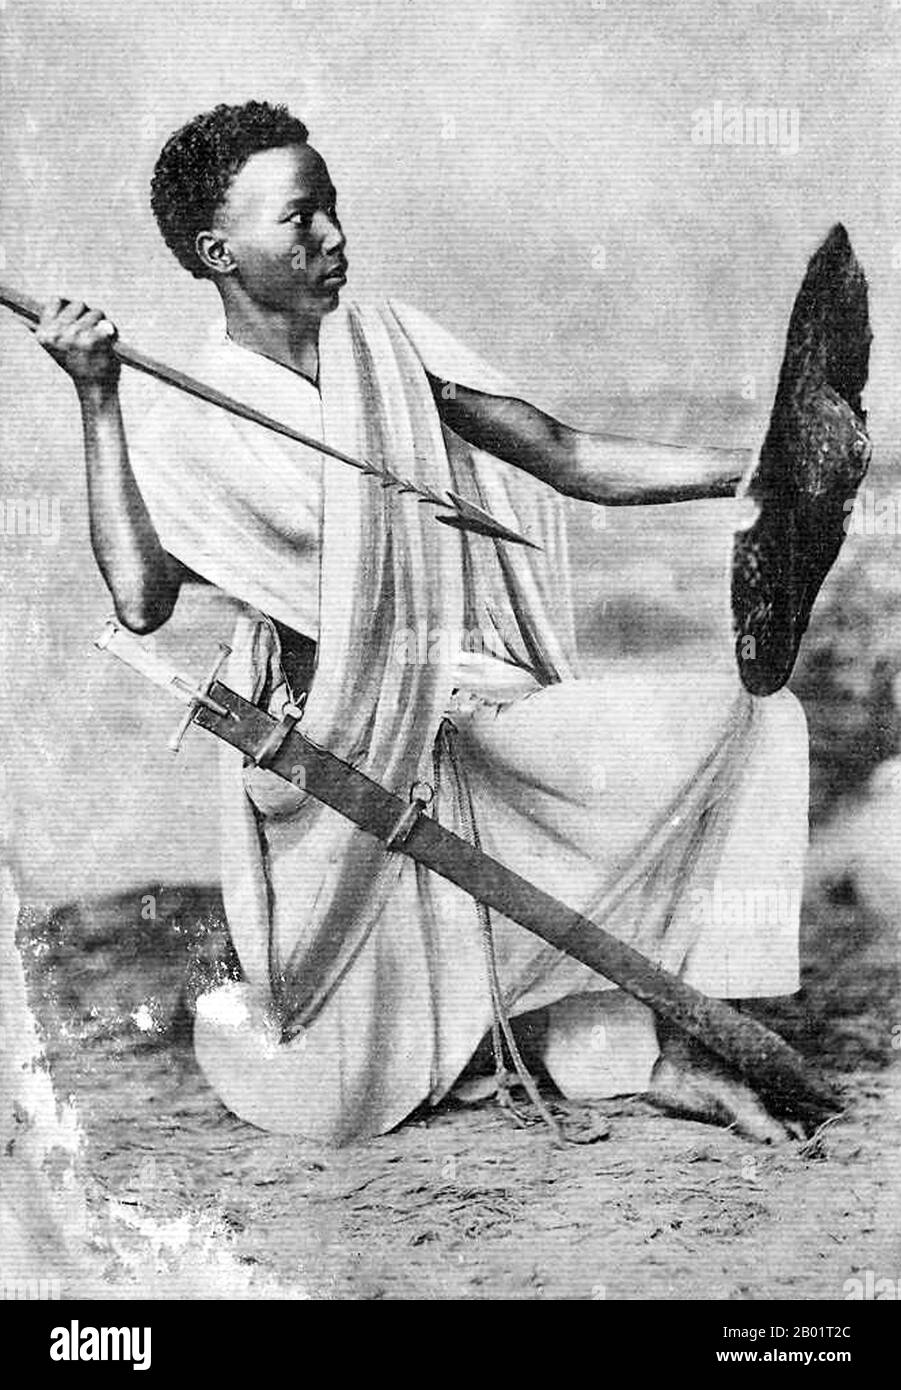 Mali: Un "giovane guerriero sudanese" (dall'ex Soudan francese), all'inizio del XX secolo. Il Sudan francese era una colonia dell'Africa occidentale francese che ebbe due periodi di esistenza separati, prima dal 1890 al 1899, poi dal 1920 al 1960, quando il territorio divenne la nazione indipendente del Mali. Foto Stock